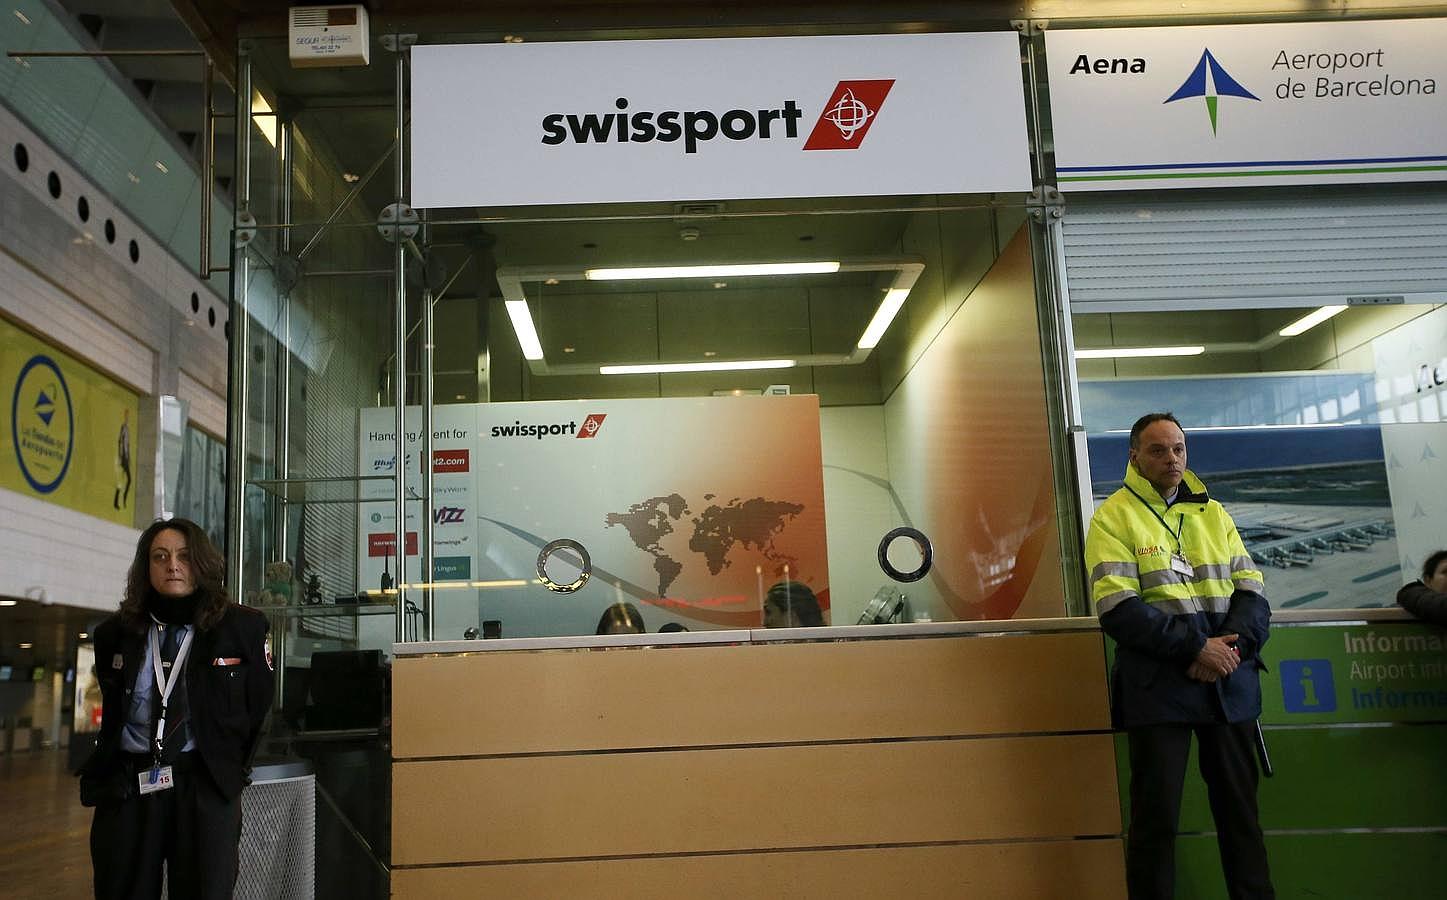 El mostrador de Swissport, compañía de handling a través de la cual opera Germanwings en Barcelona, permanece asegurada por agentes de seguridad